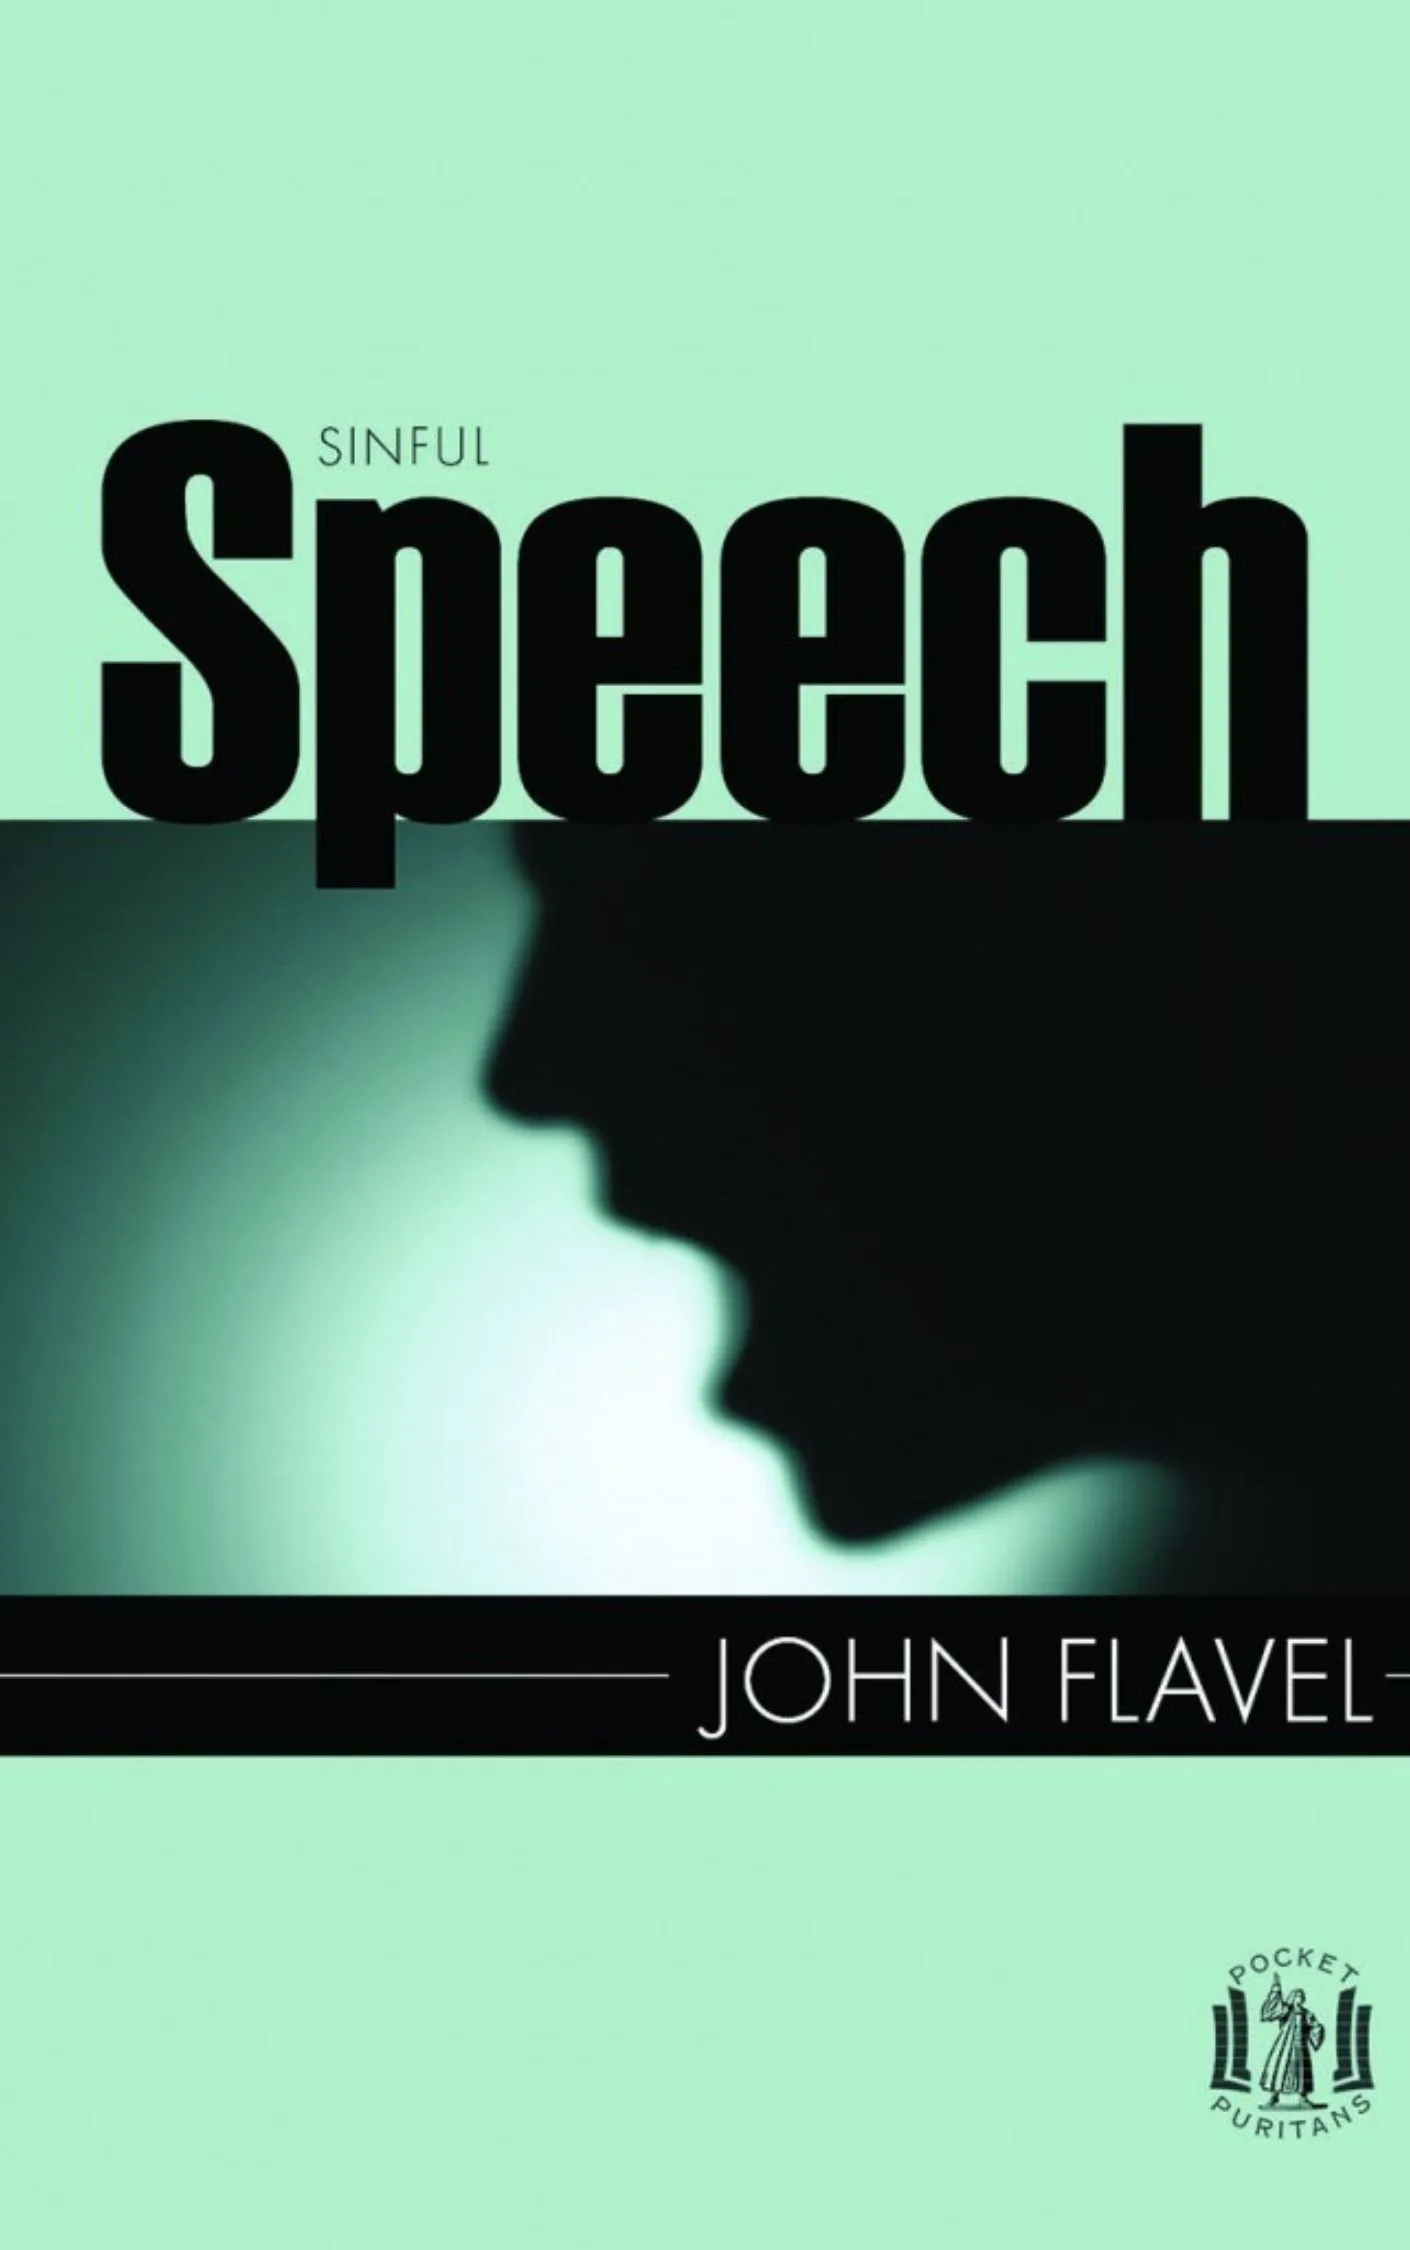 Sinful Speech by John Flavel